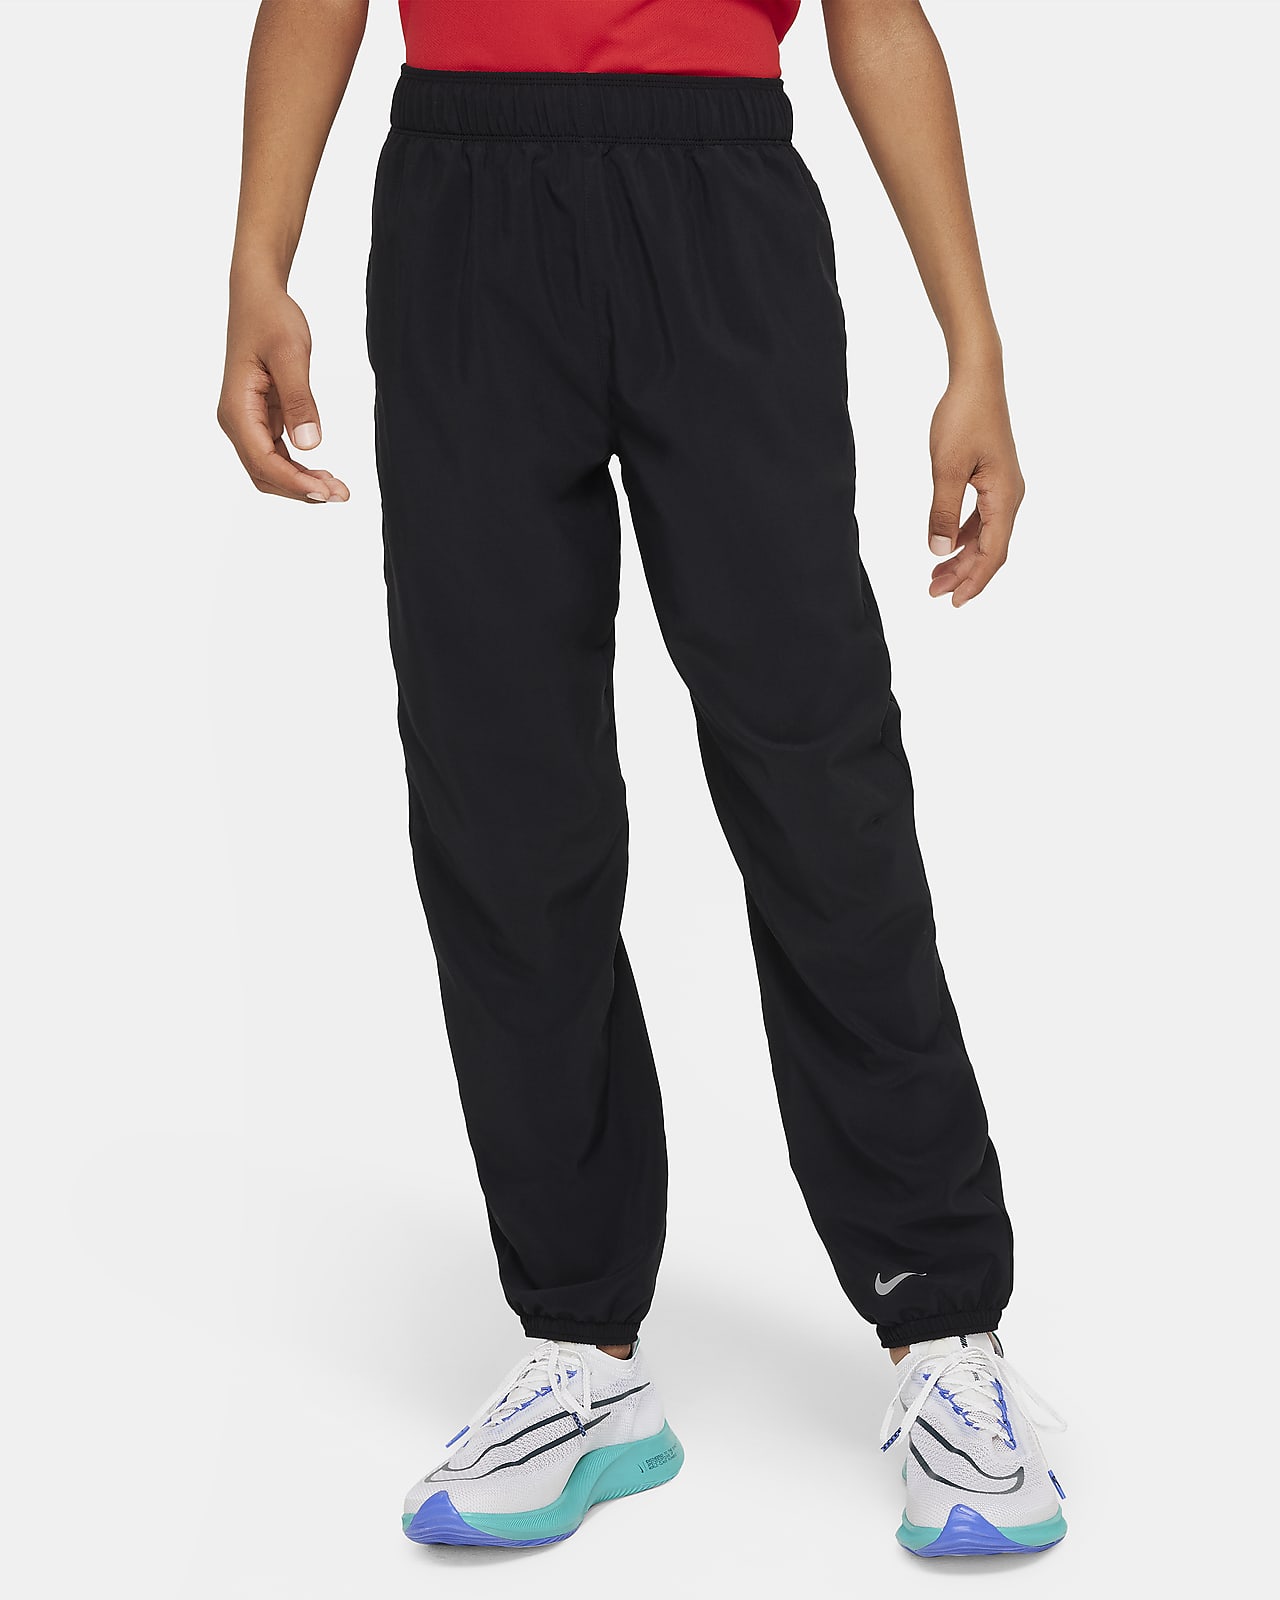 กางเกงขายาวเด็กโต Nike Dri-FIT Multi (ชาย)